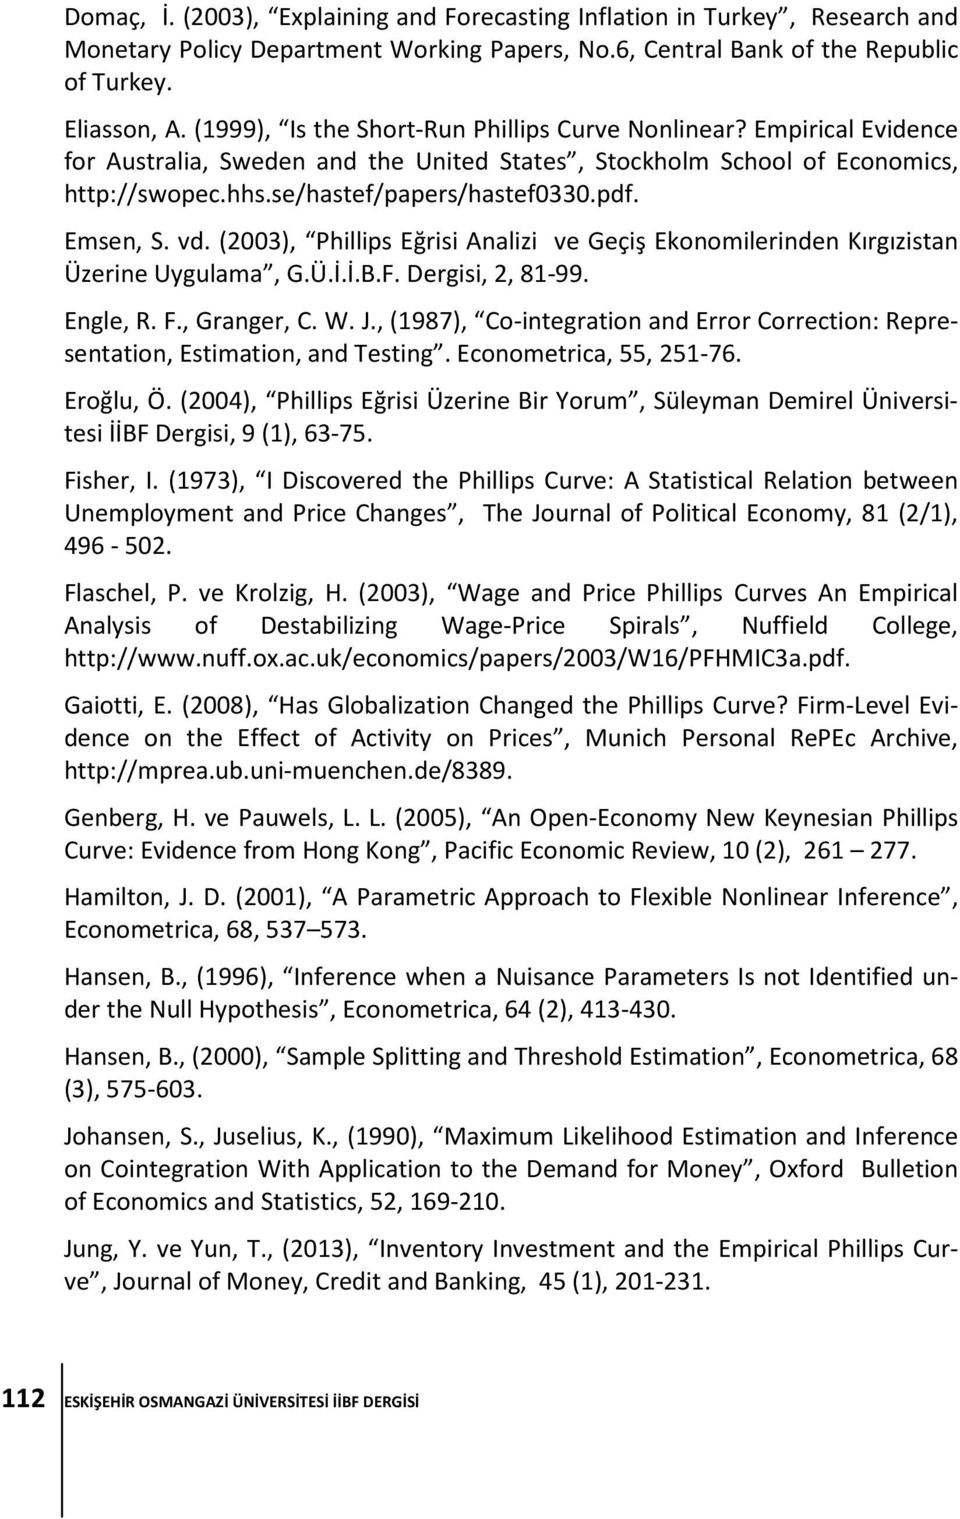 Emsen, S. vd. (2003), Phillips Eğrisi Analizi ve Geçiş Ekonomilerinden Kırgızistan Üzerine Uygulama, G.Ü.İ.İ.B.F. Dergisi, 2, 81-99. Engle, R. F., Granger, C. W. J.